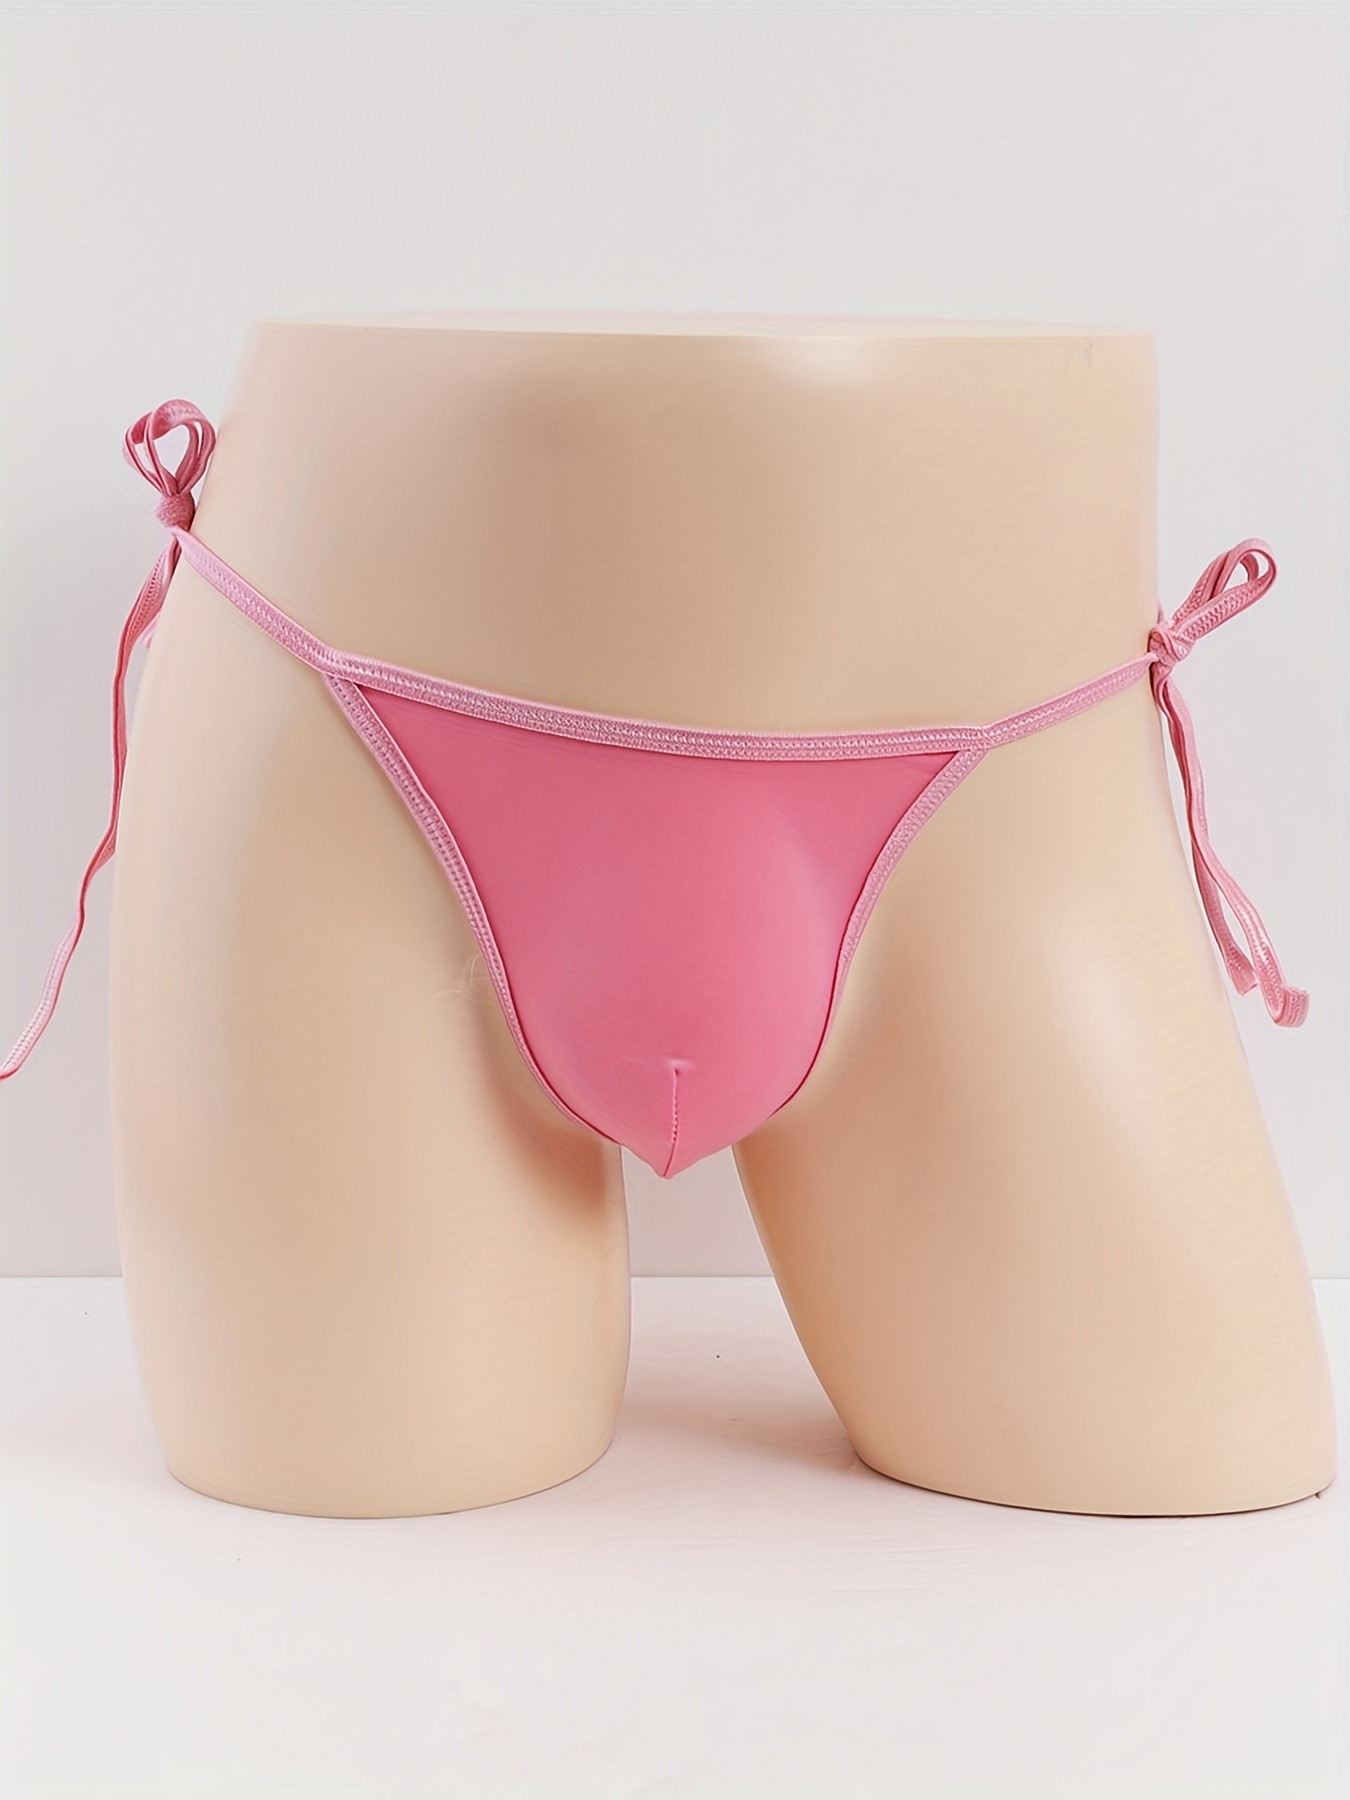 Women Sheer Mini G-String See Through Tie-Side Underwear Panties Knickers  T-back